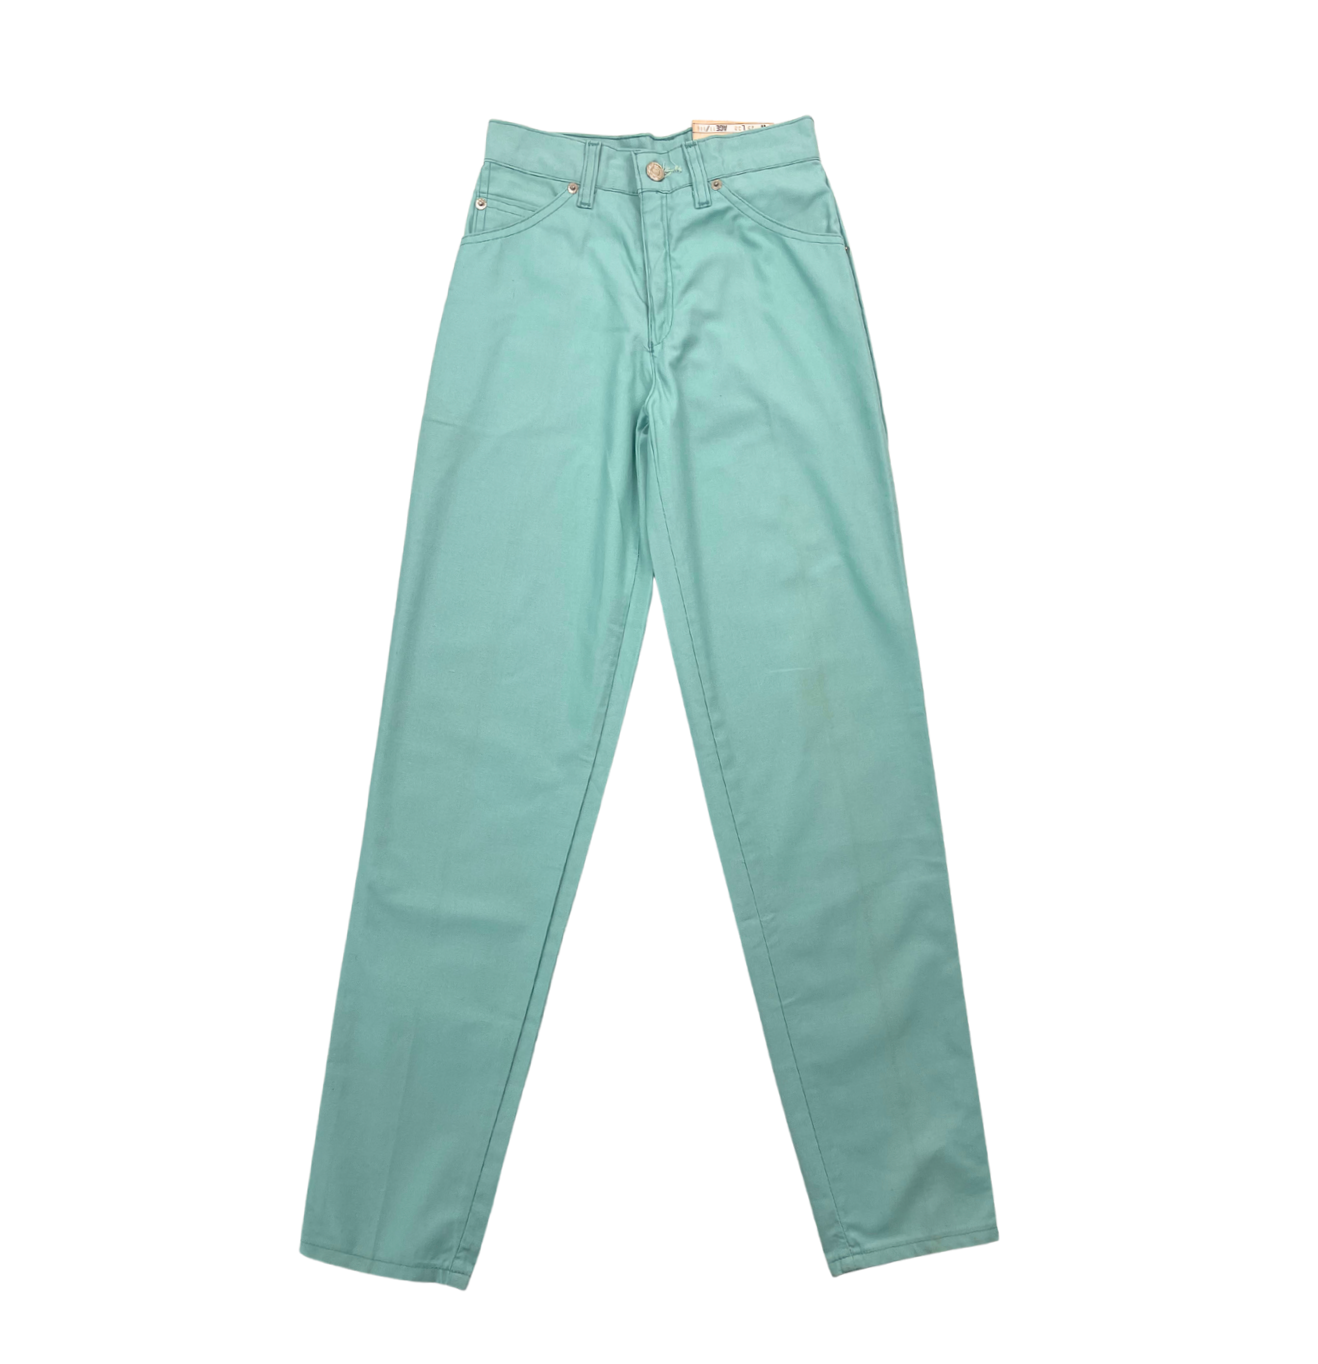 LEVI’S – Pantalon droit turquoise (neuf) – 11 ans